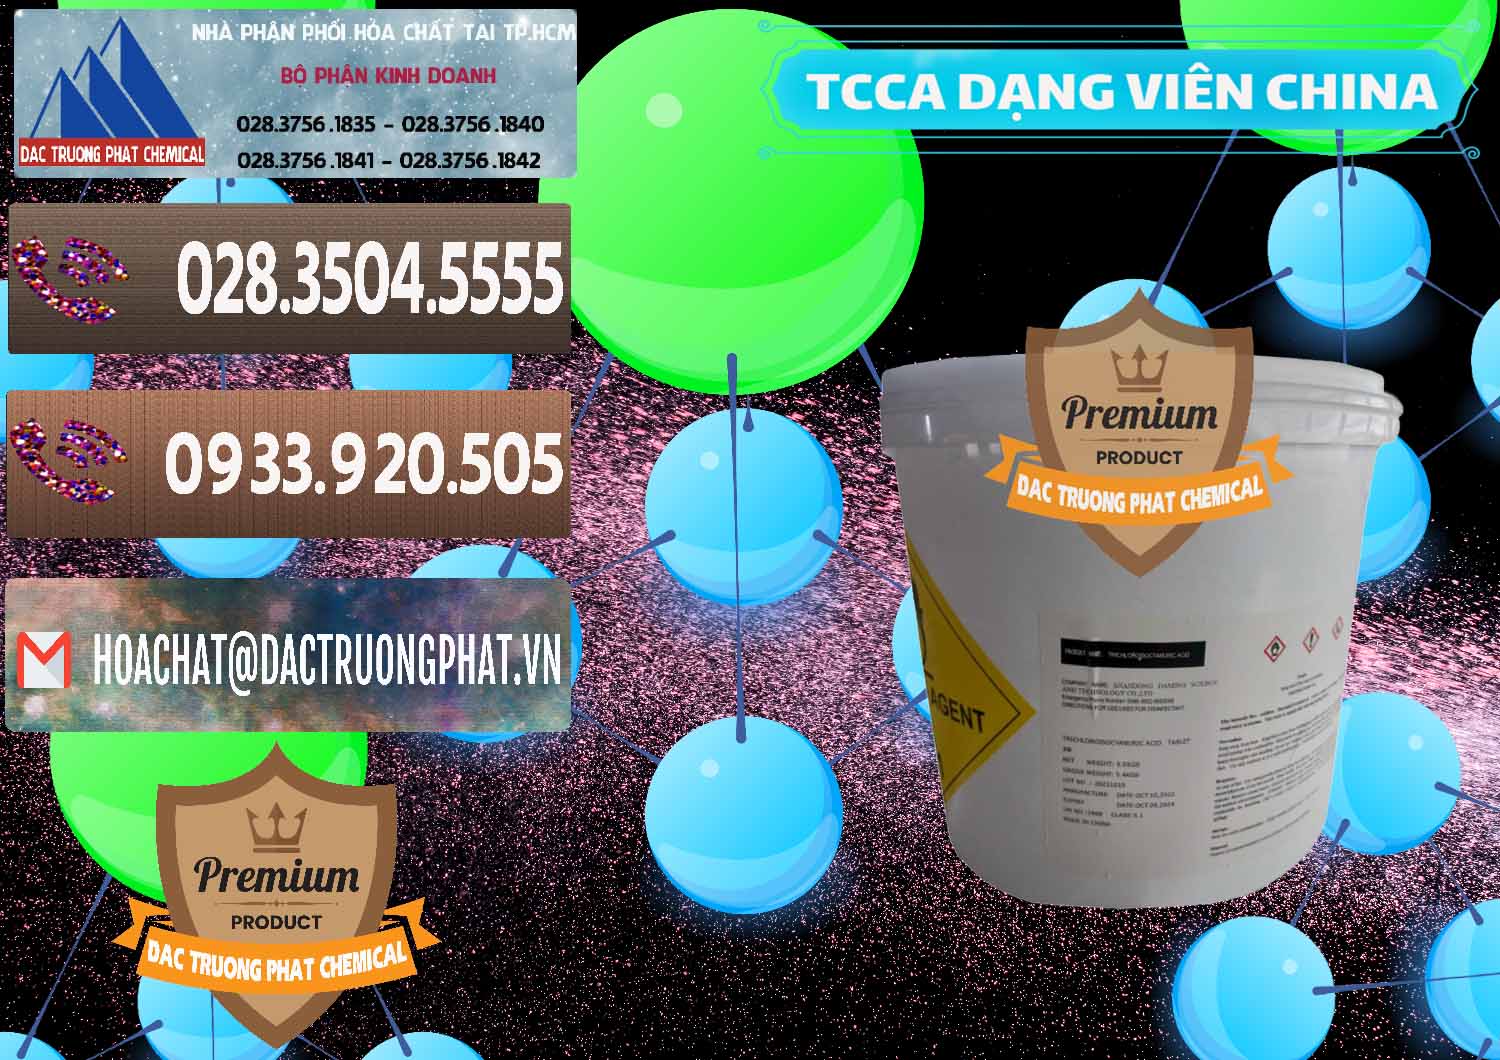 Cty chuyên cung ứng ( bán ) TCCA - Acid Trichloroisocyanuric Dạng Viên Thùng 5kg Trung Quốc China - 0379 - Cty phân phối - kinh doanh hóa chất tại TP.HCM - hoachatviet.net